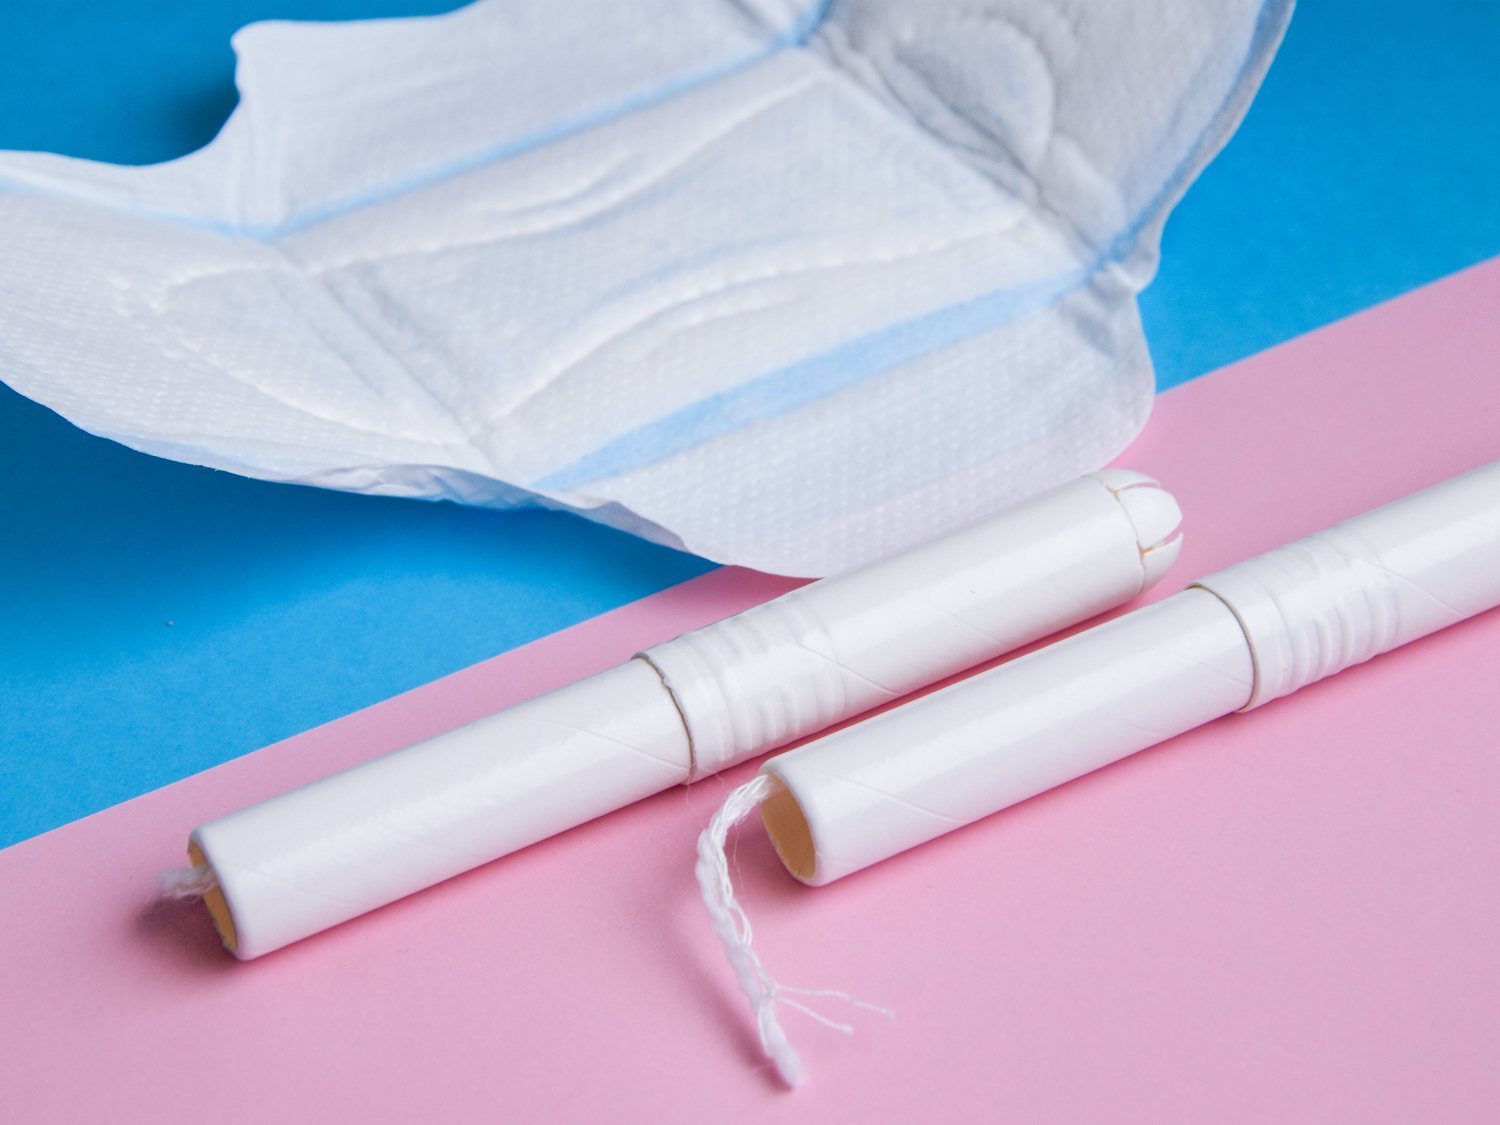 Escocia, el primer país con productos para la menstruación gratuitos